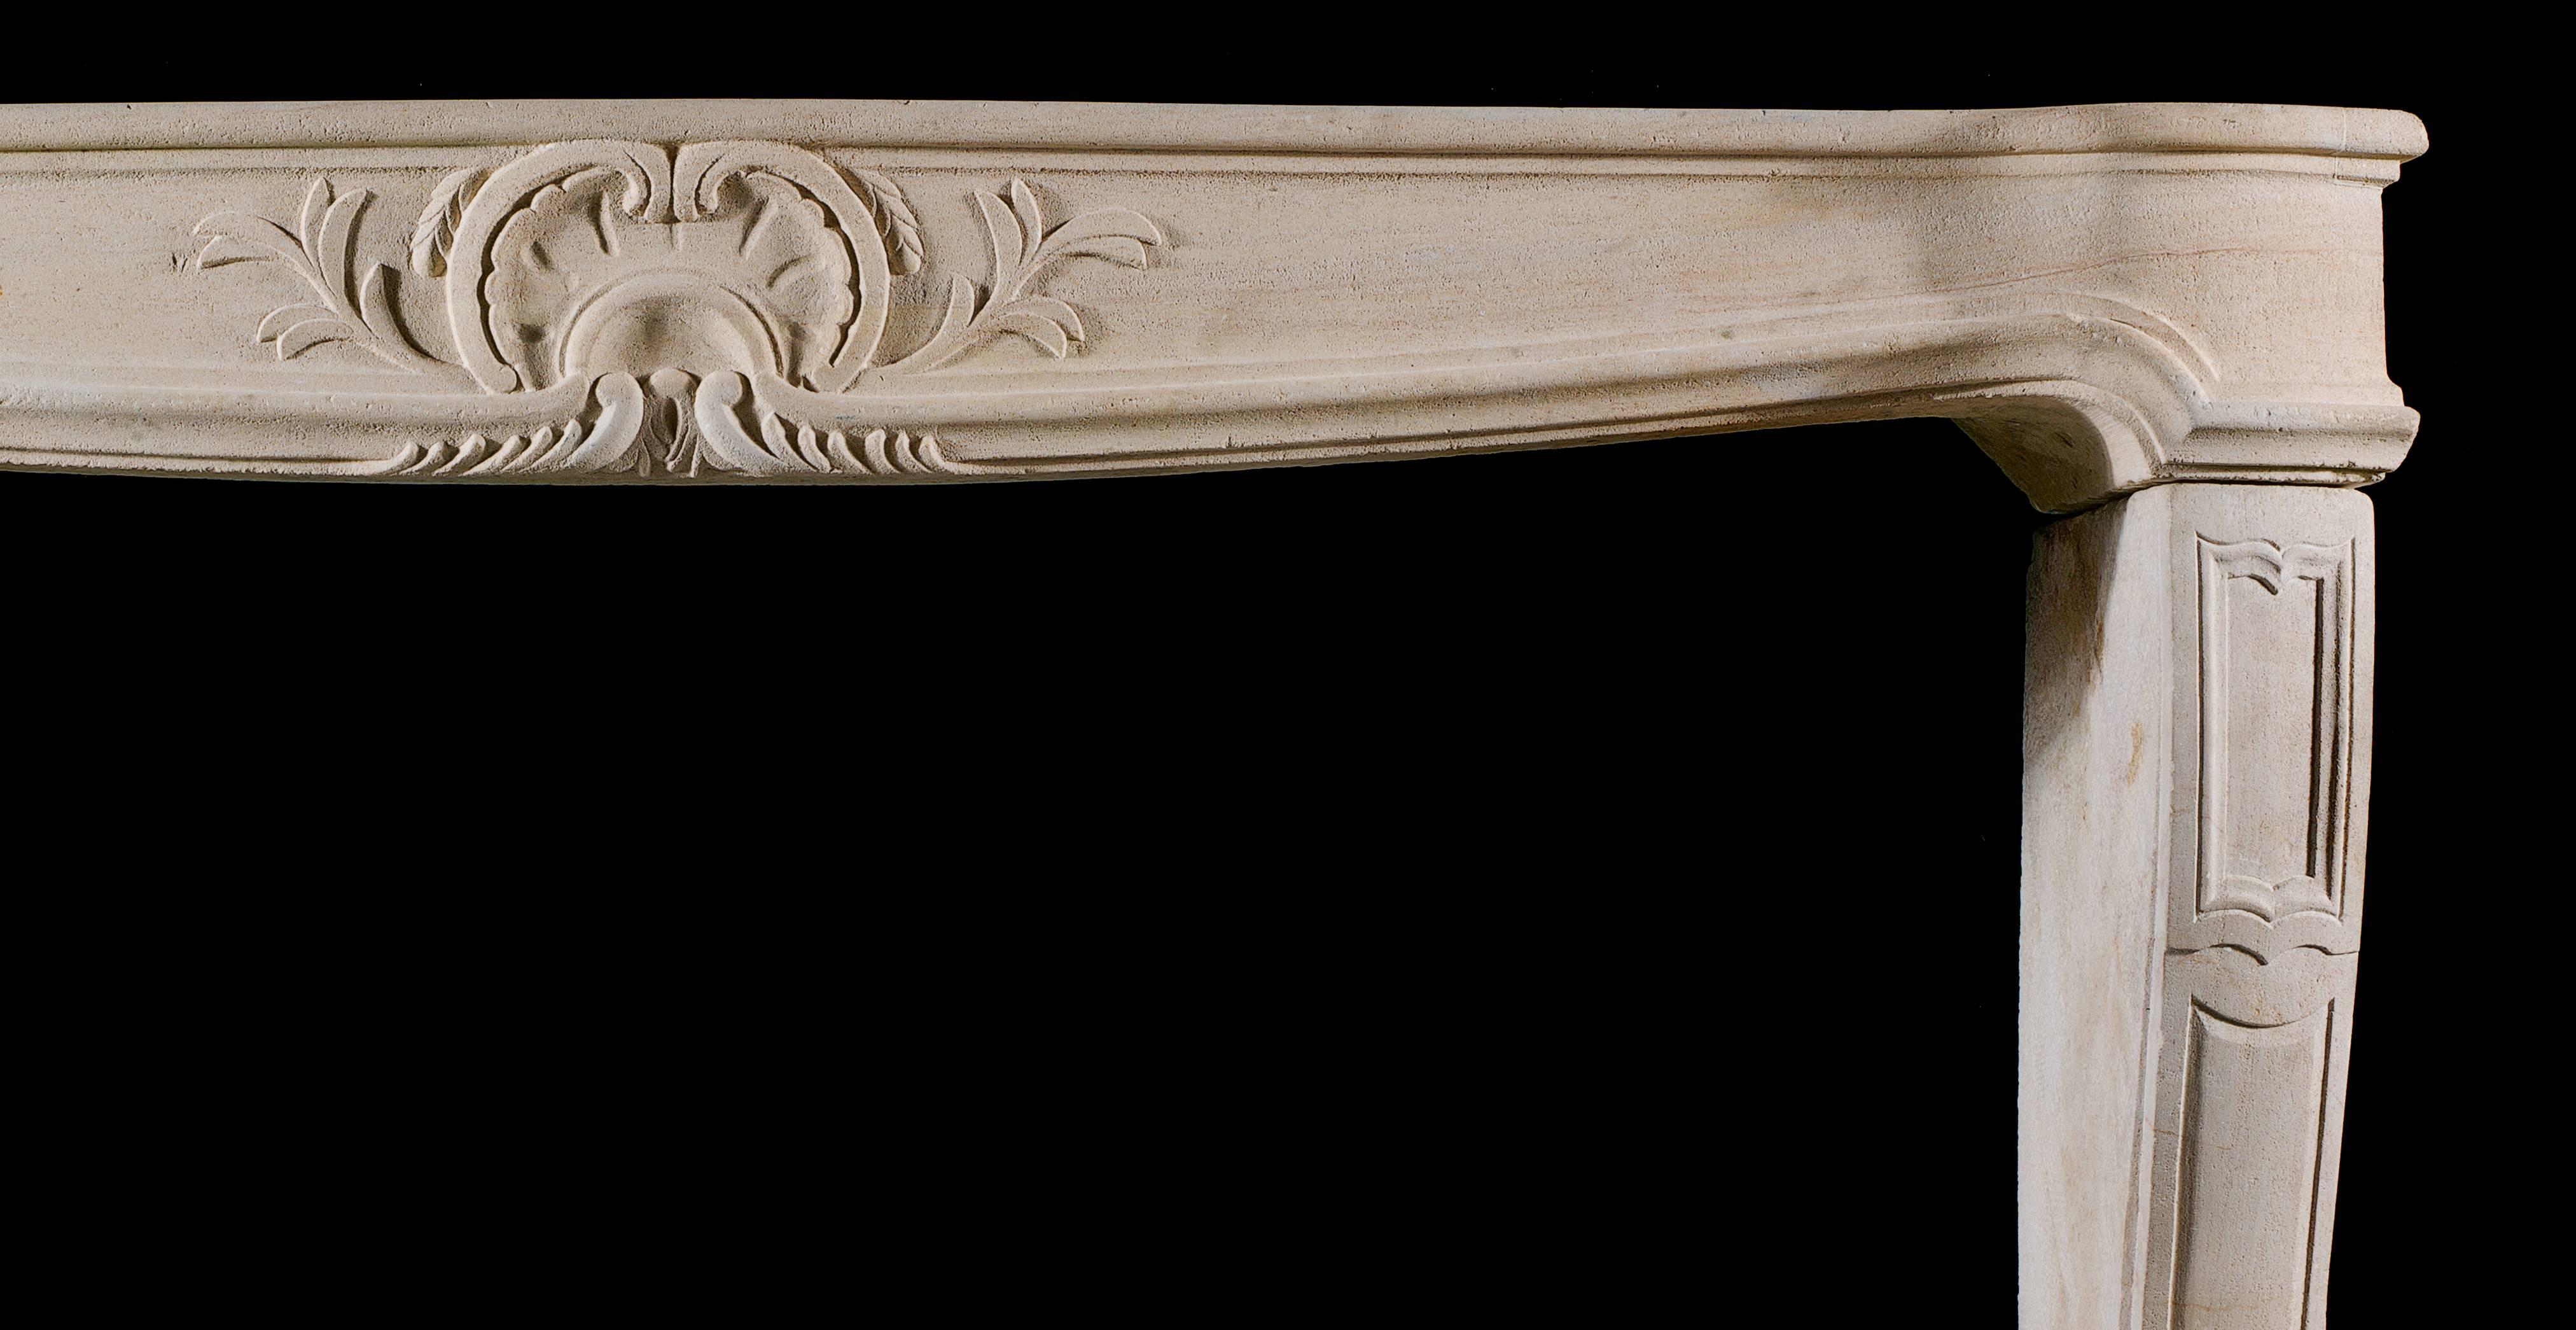 Antiker französischer Rokoko-Kaminsockel in der Louis XV-Manier, aus Kalkstein gehauen. Das serpentinenförmige Regal ist mit dem ähnlich geformten Fries verbunden, der aus dem Vollen geschnitzt und mit einer einfachen floralen Muschelkartusche